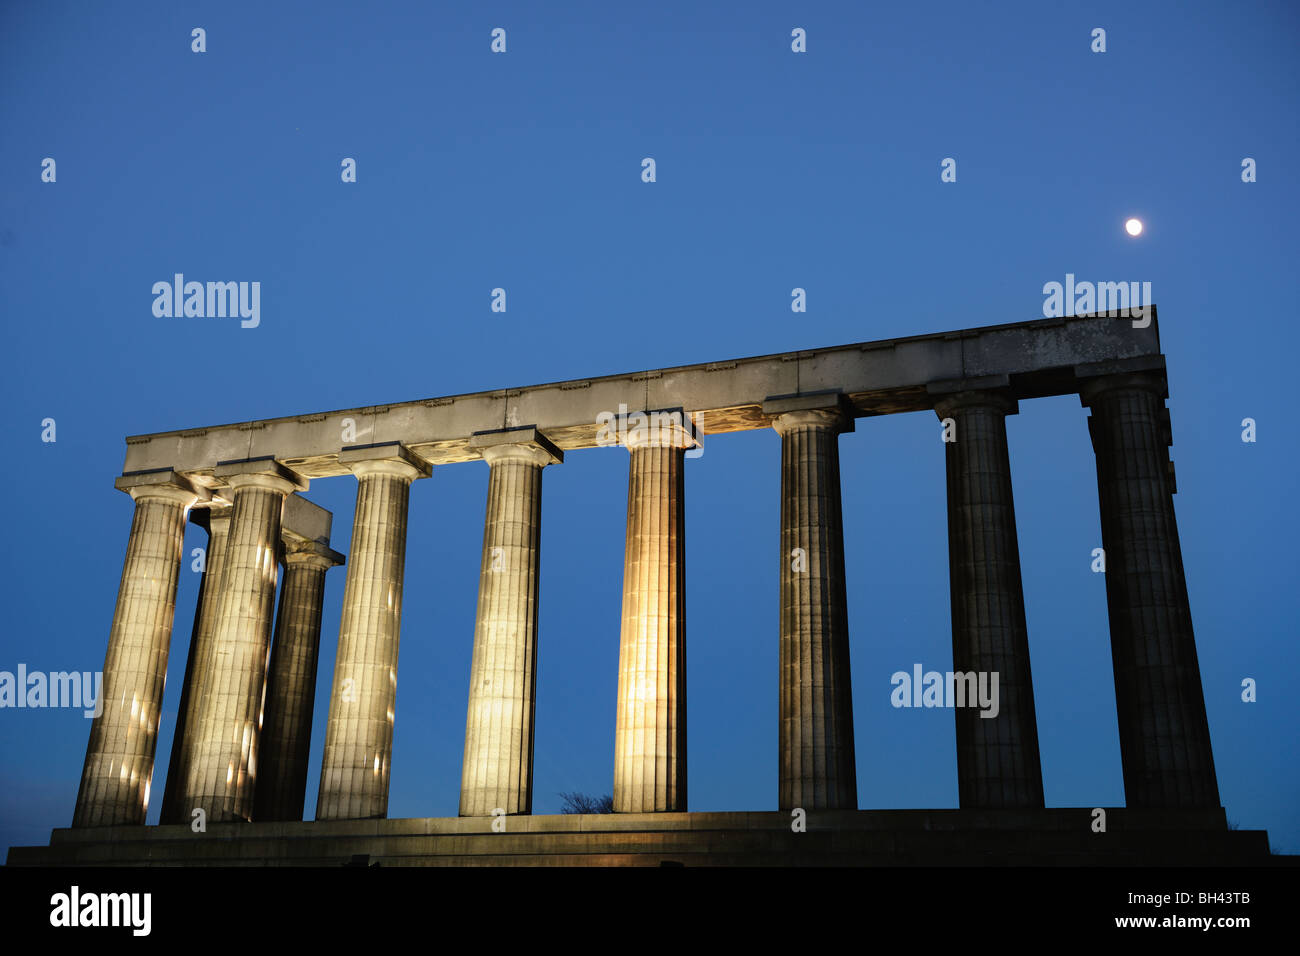 National Monument, Calton Hill, Edinburgh, Scotland, UK illuminated at dusk Stock Photo